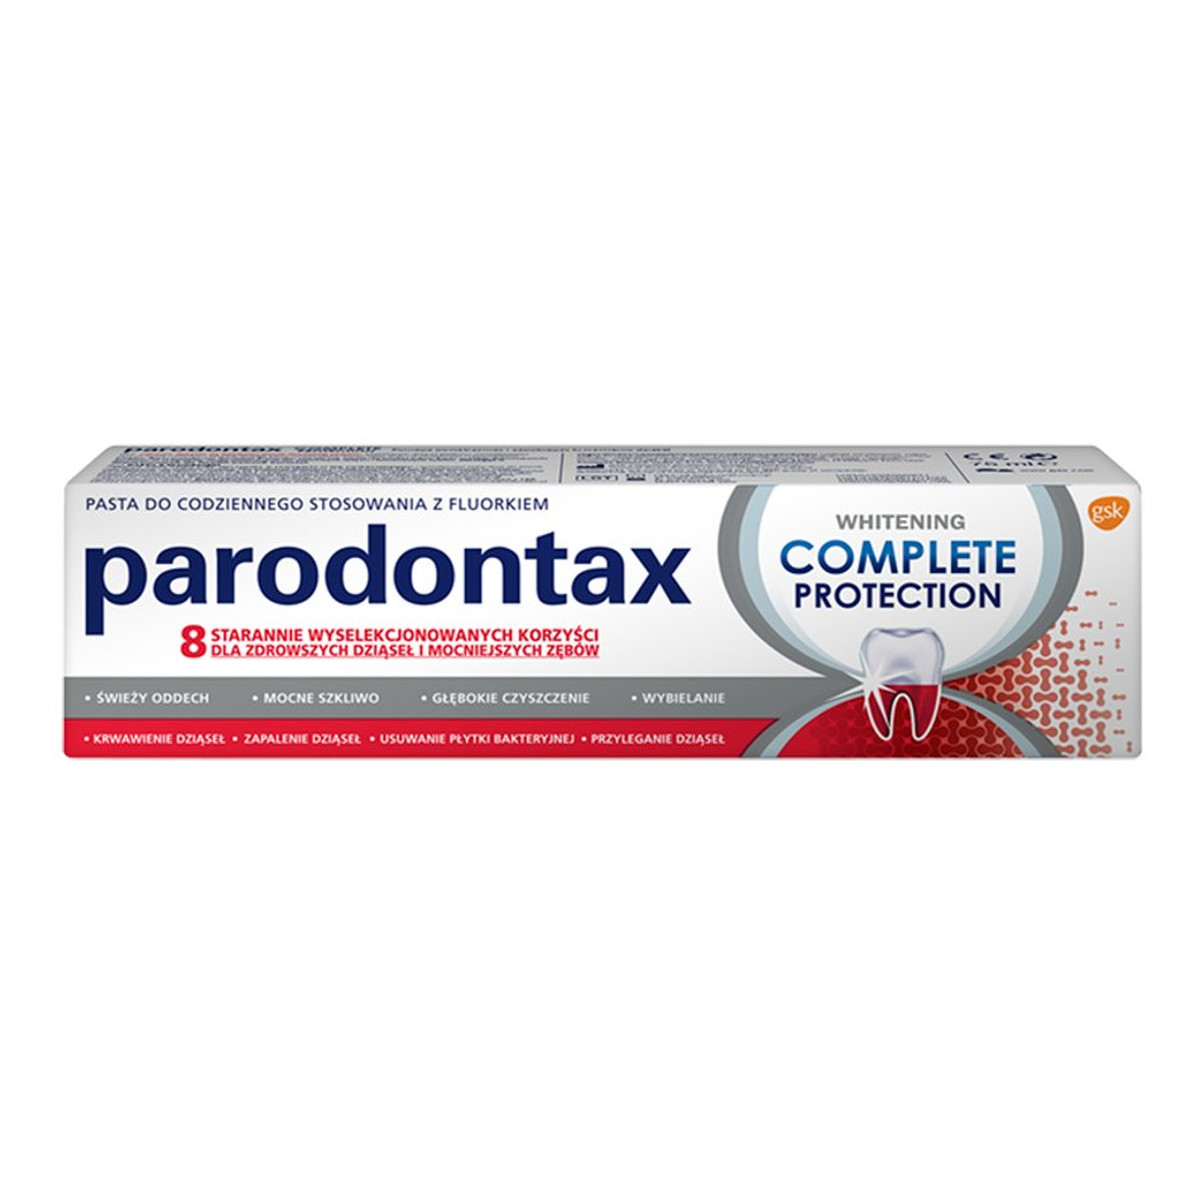 Parodontax Complete protection whitening pasta do zębów 75ml